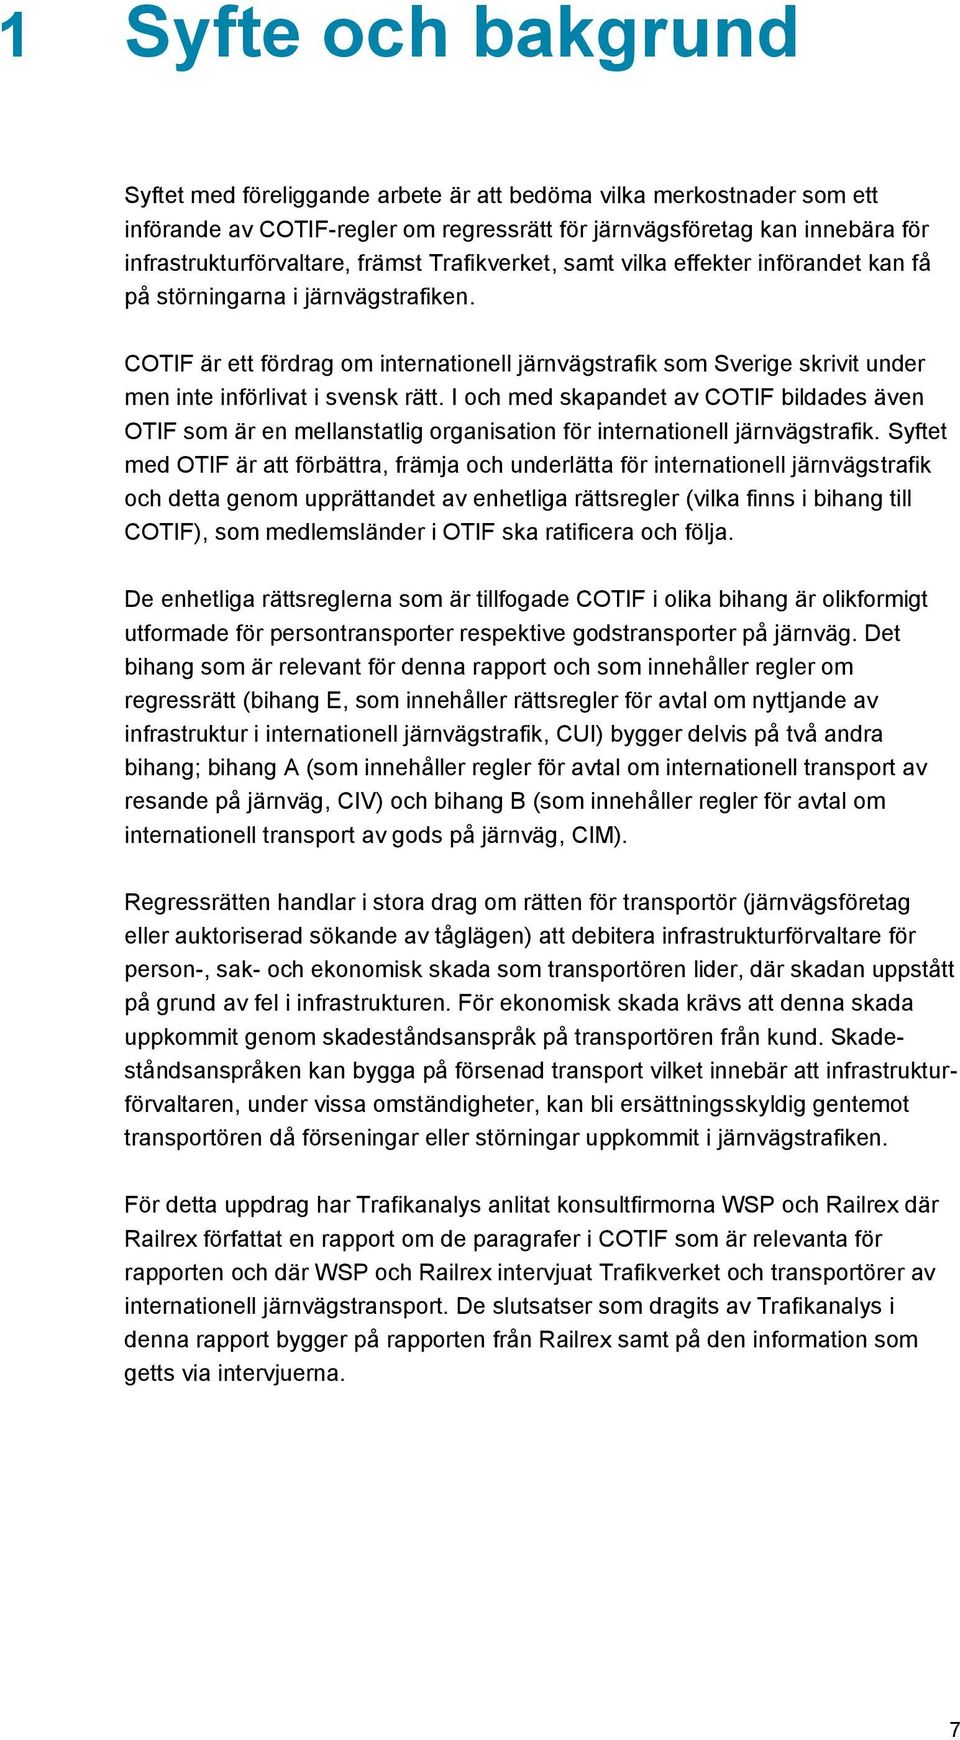 COTIF är ett fördrag om internationell järnvägstrafik som Sverige skrivit under men inte införlivat i svensk rätt.